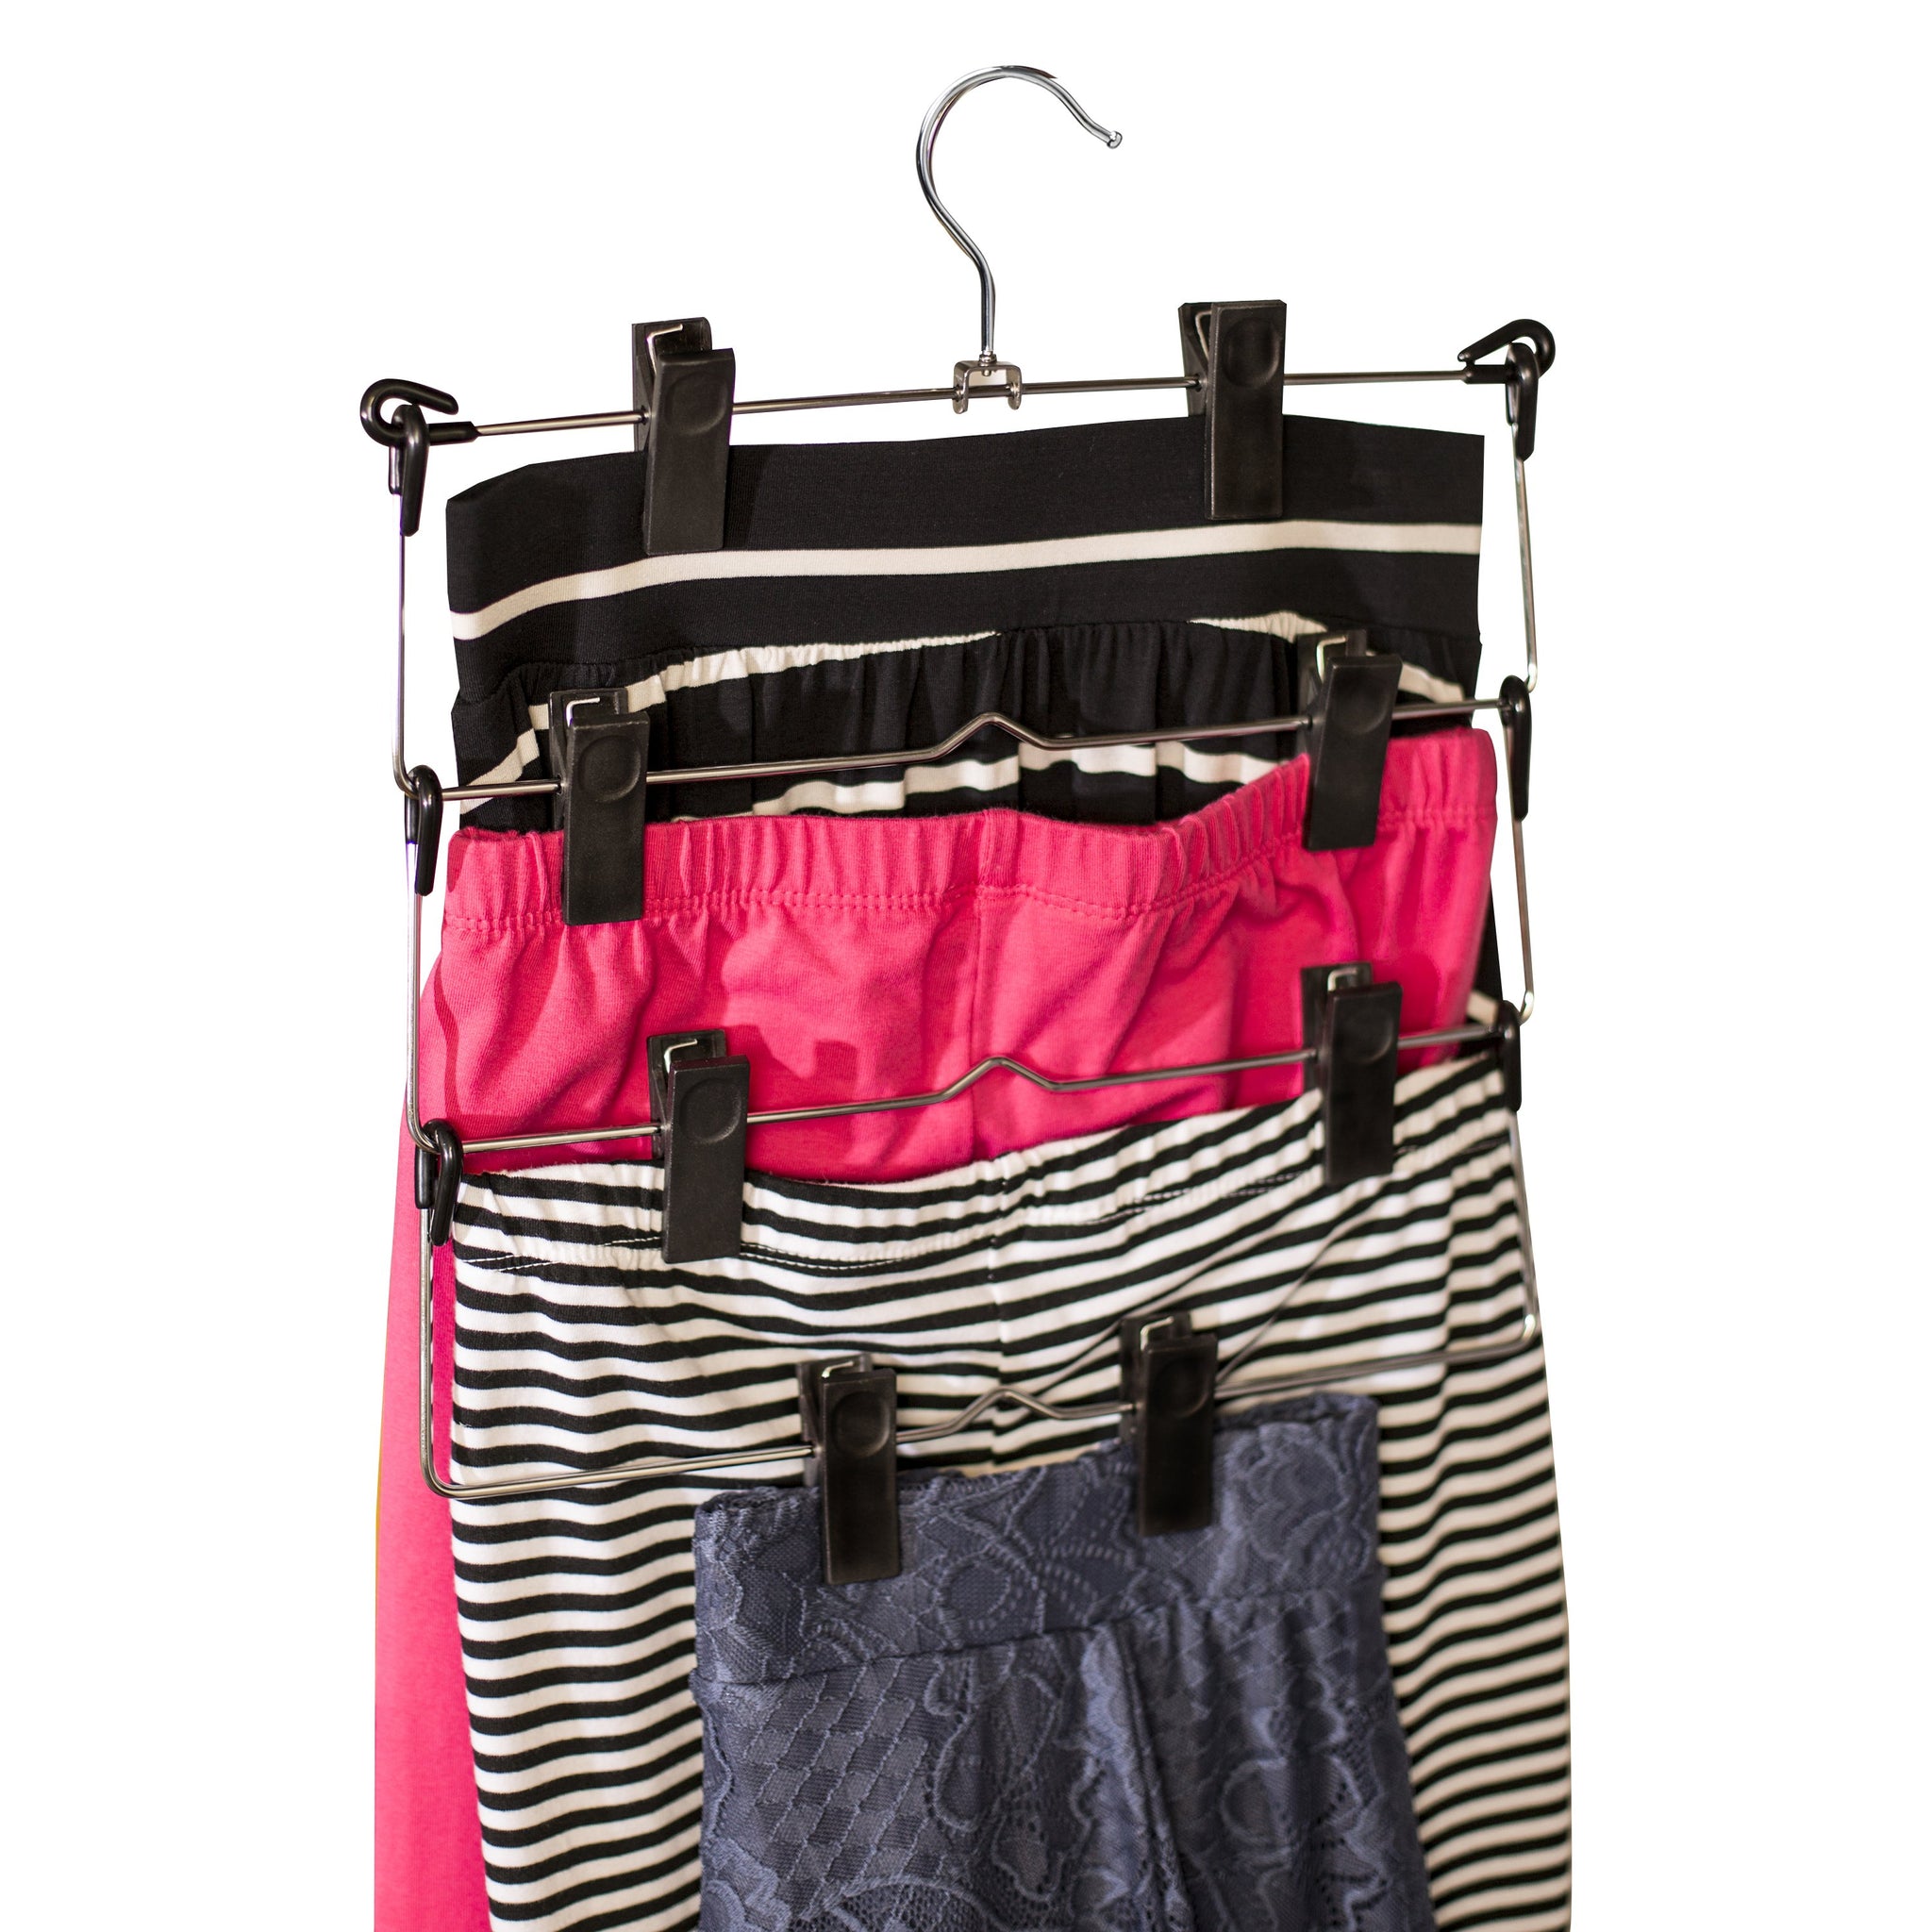 4-Tier Pant or Skirt Hanger, Chrome & Black